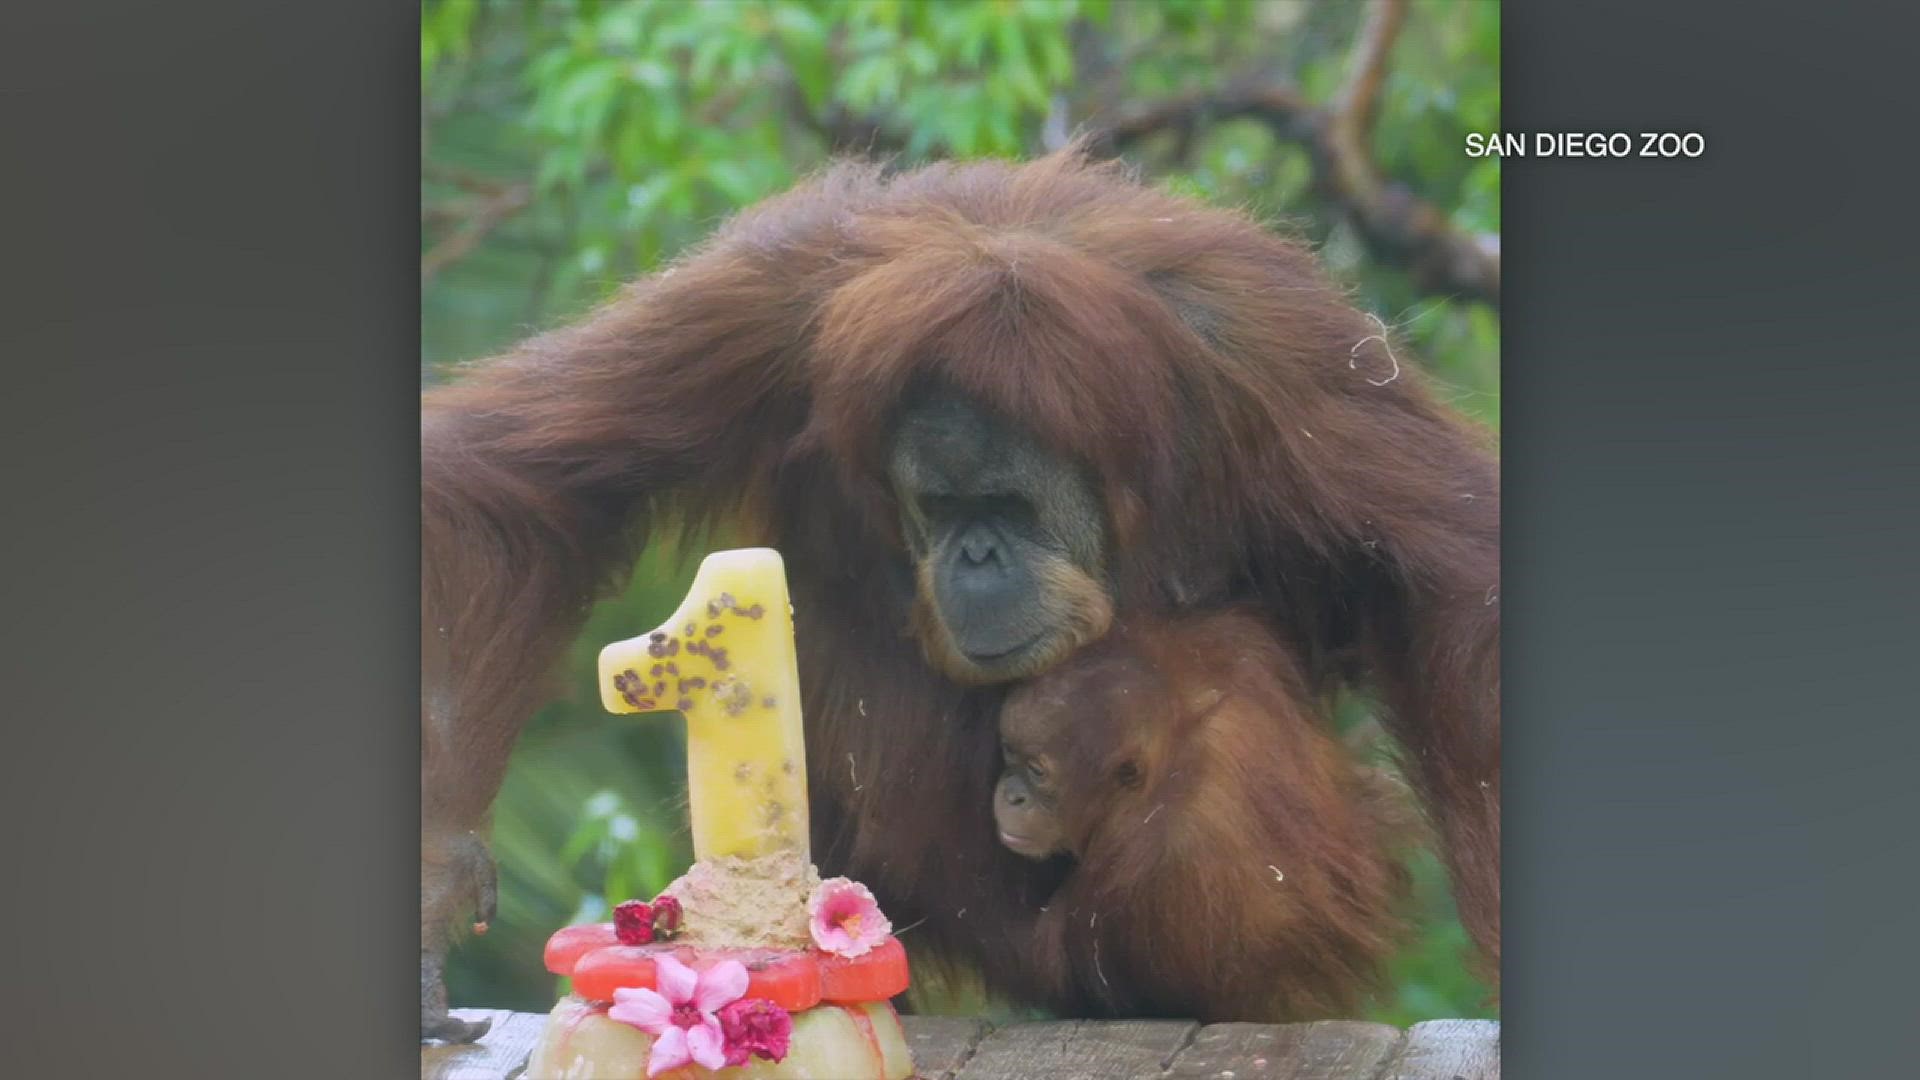 Kaja, a critically endangered Sumatran orangutan, celebrates 1st birthday at San Diego Zoo.